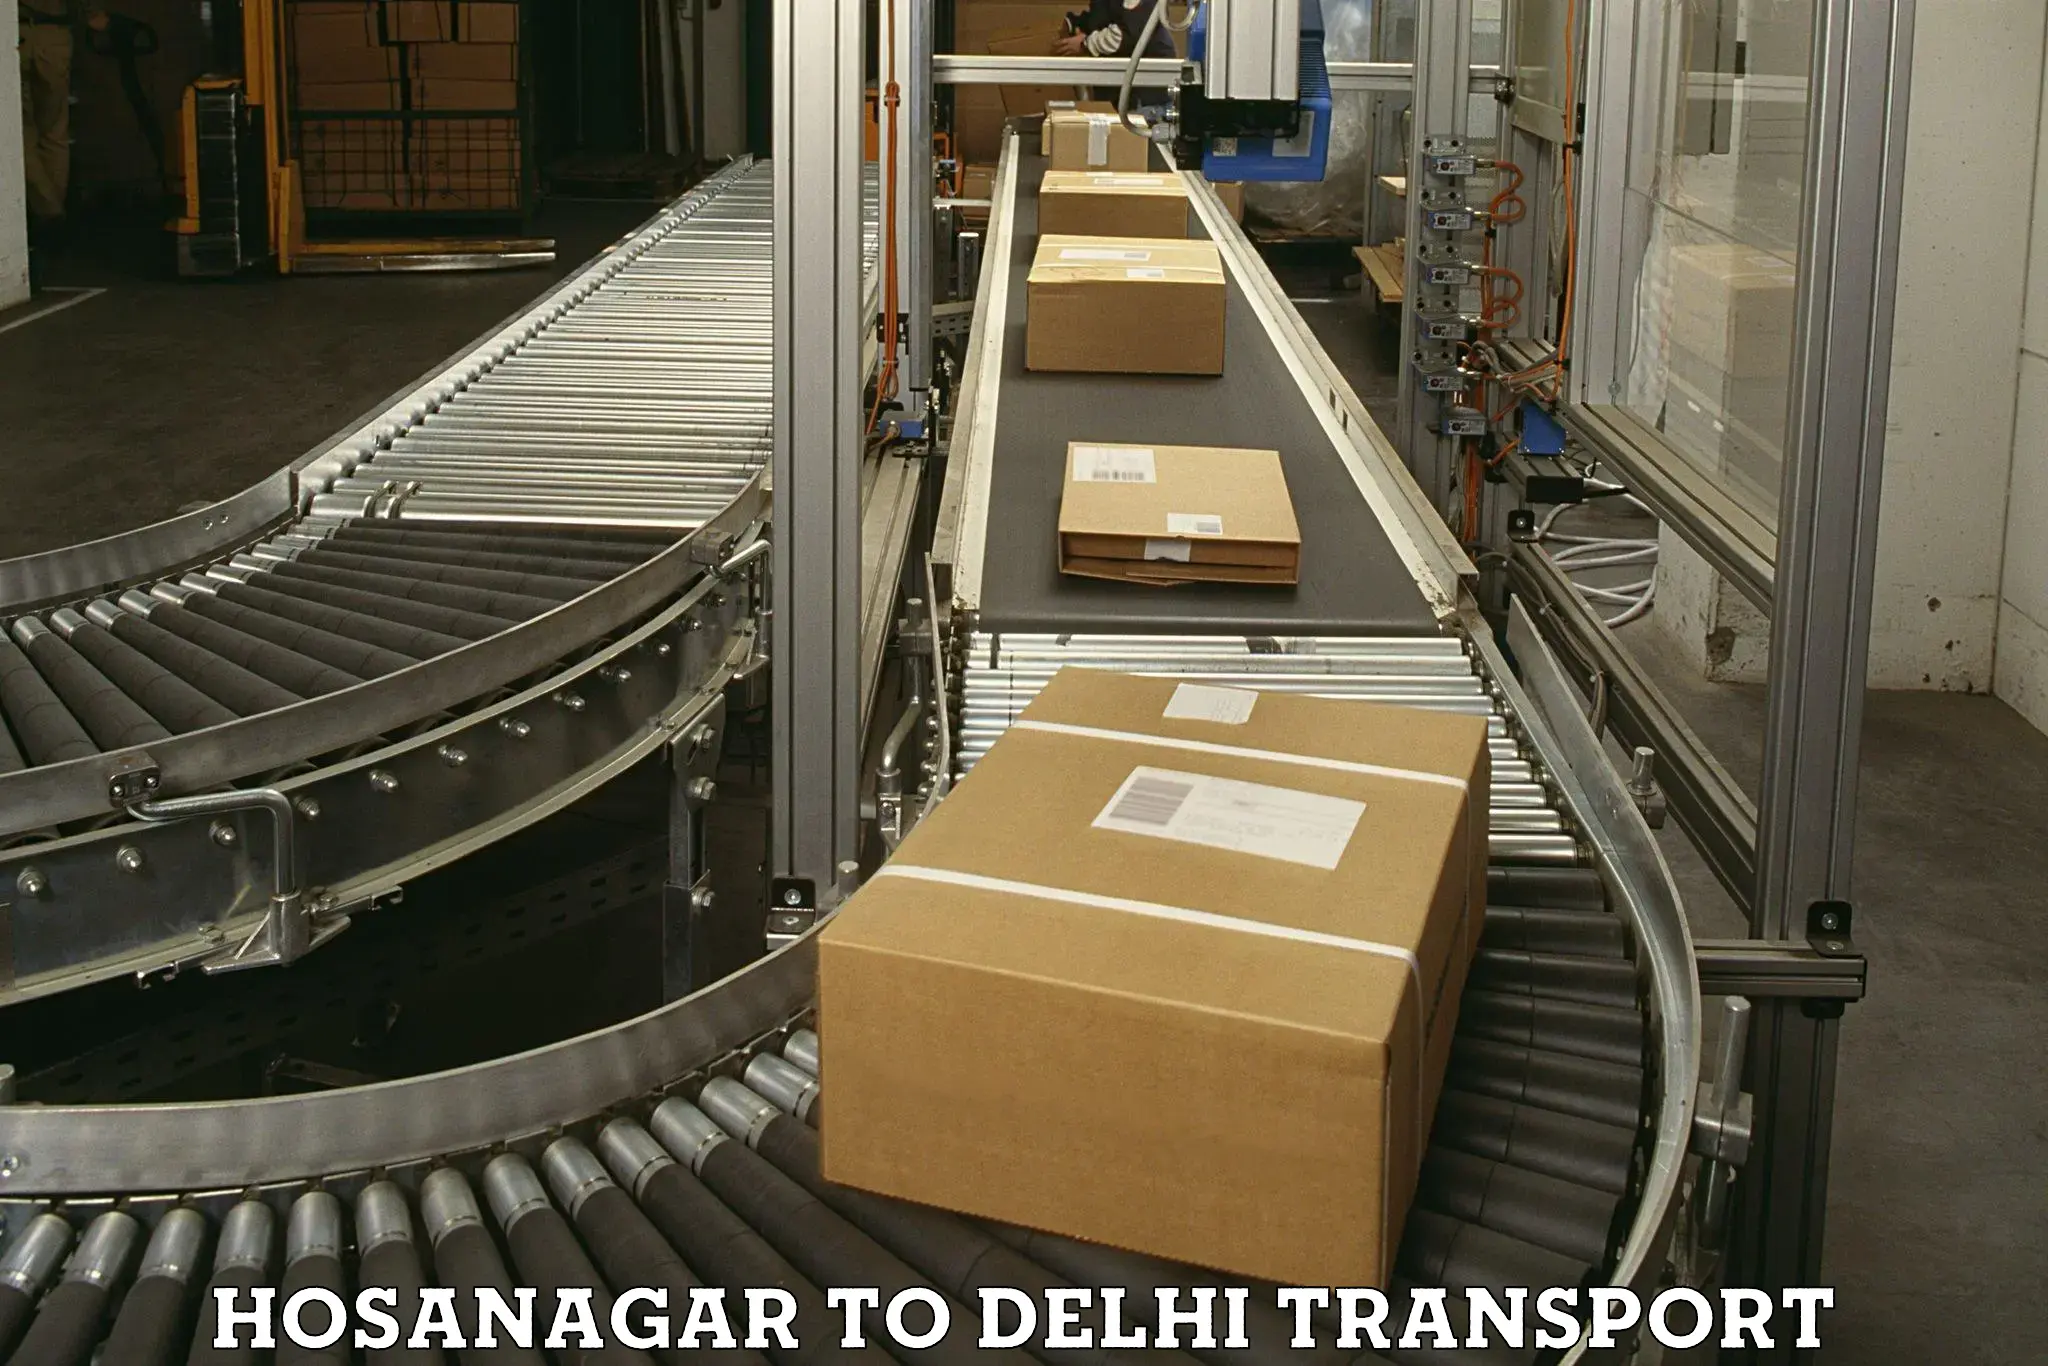 International cargo transportation services Hosanagar to IIT Delhi